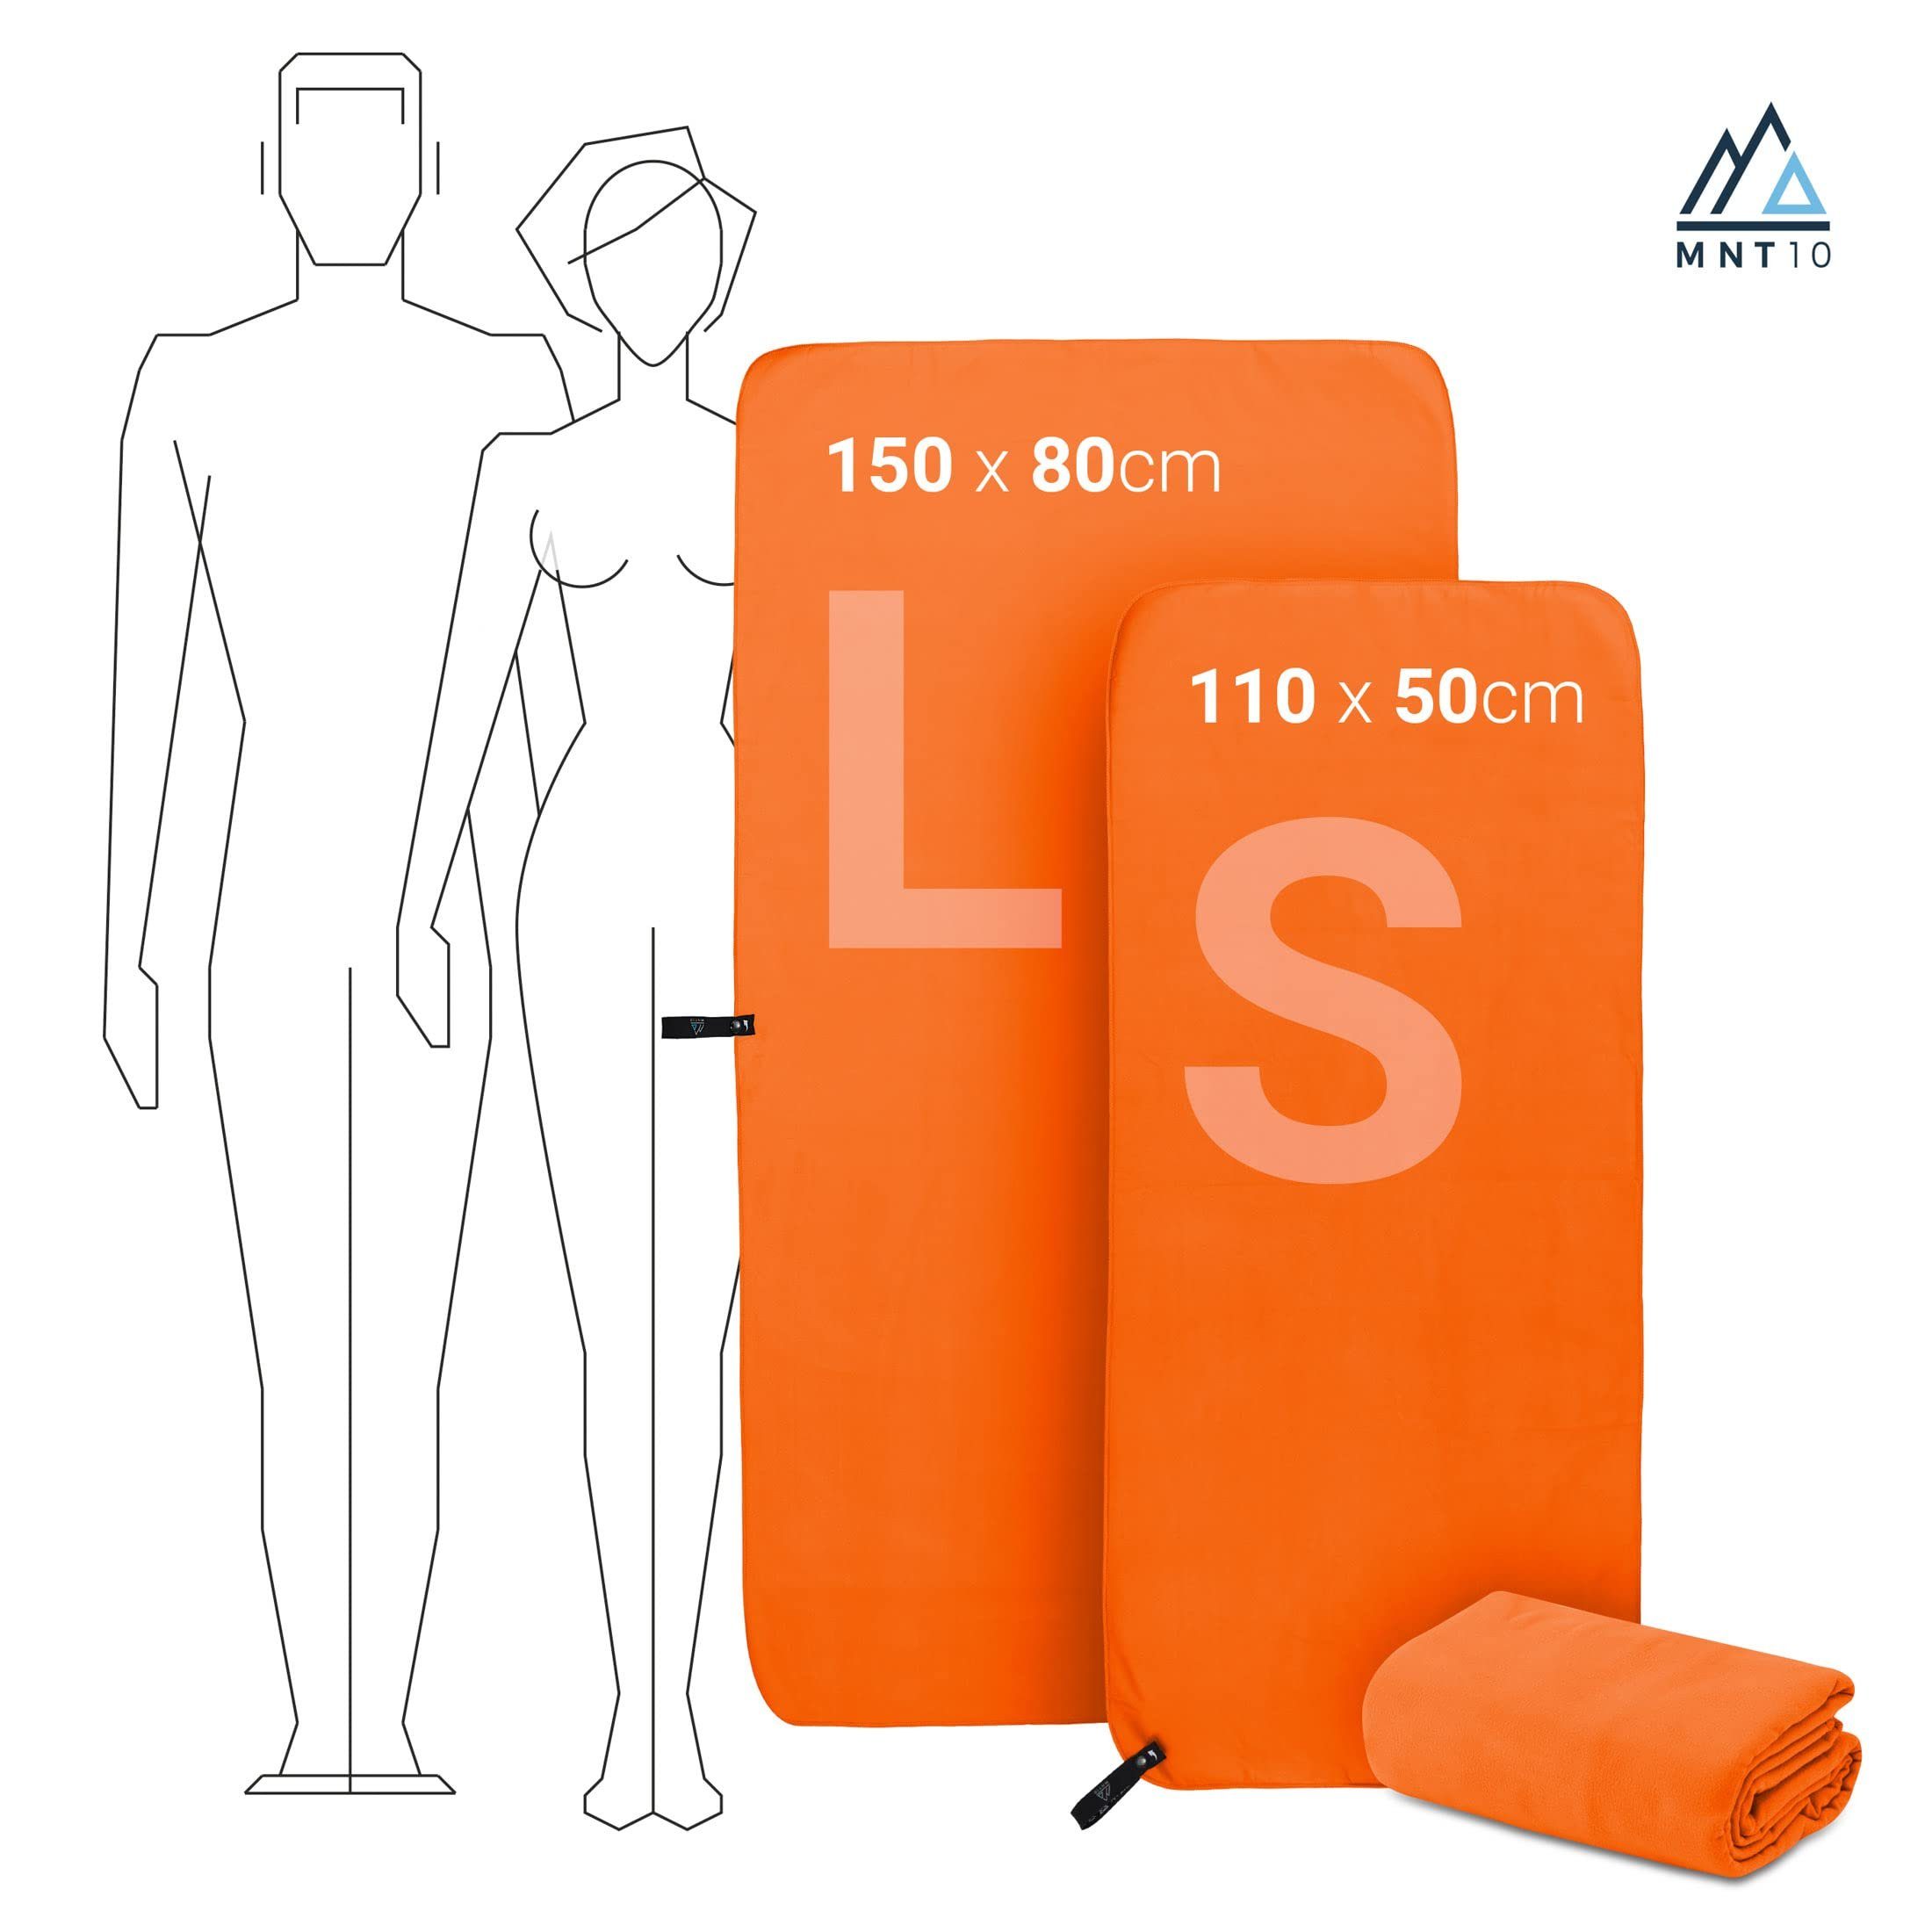 - Orange Sich Mikrofaser Case Microfaser Kompakt, Leicht, als MNT10 Mit Handtücher Ultra perfekt eignen Sporthandtuch Sporthandtuch Handtuch